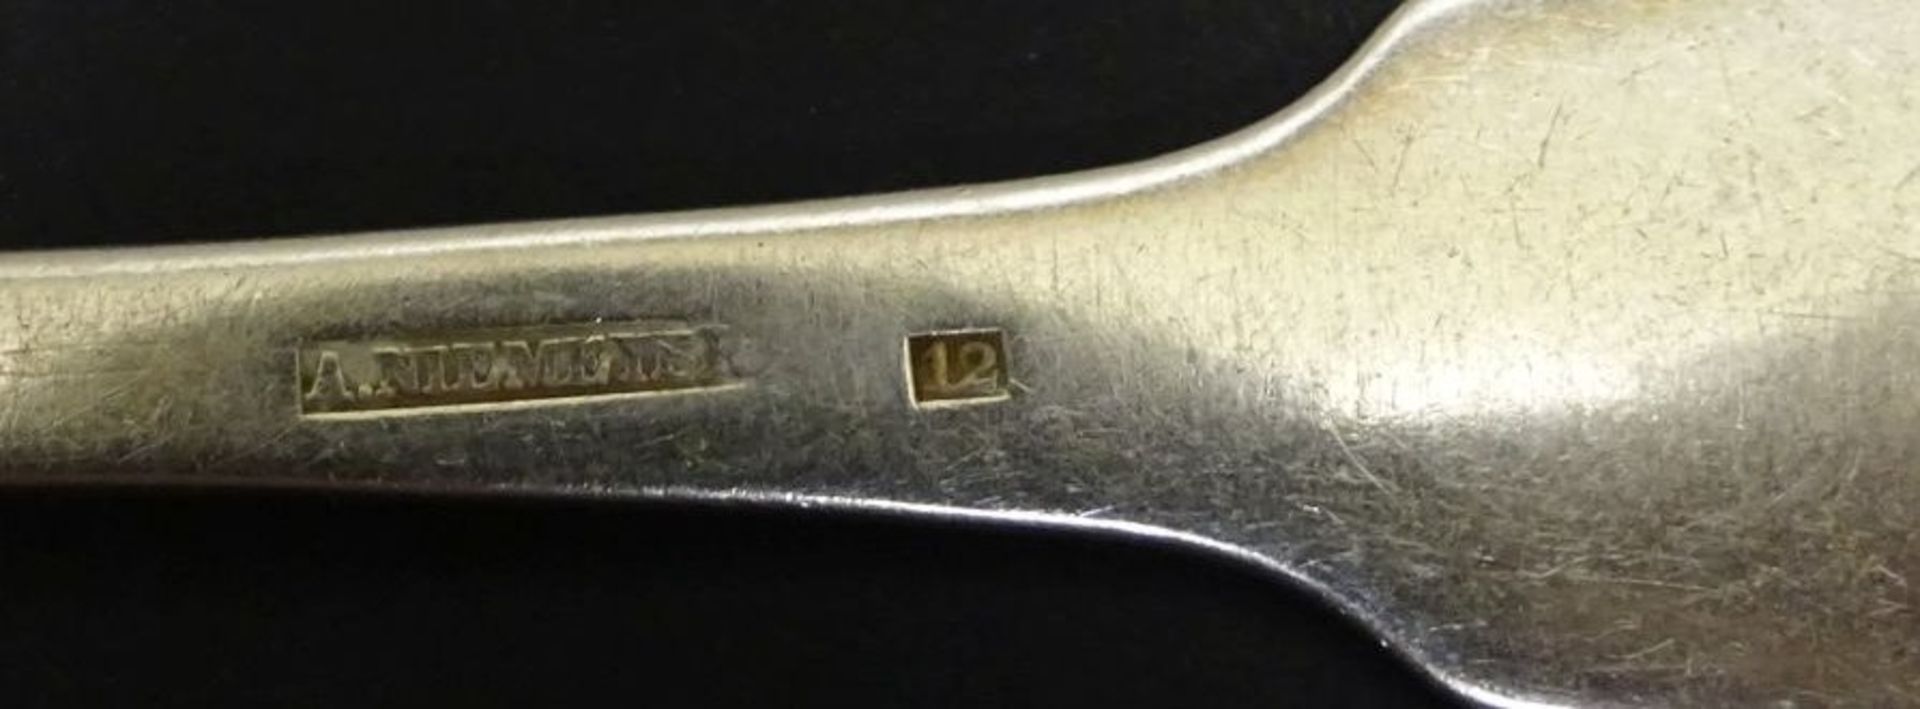 4x Silberlöffel, 12 lötig, Spatenform,mit Zier-Monogramm,Alters-u. Gebrauchsspuren, zus. 205 gr.L- - Bild 4 aus 4